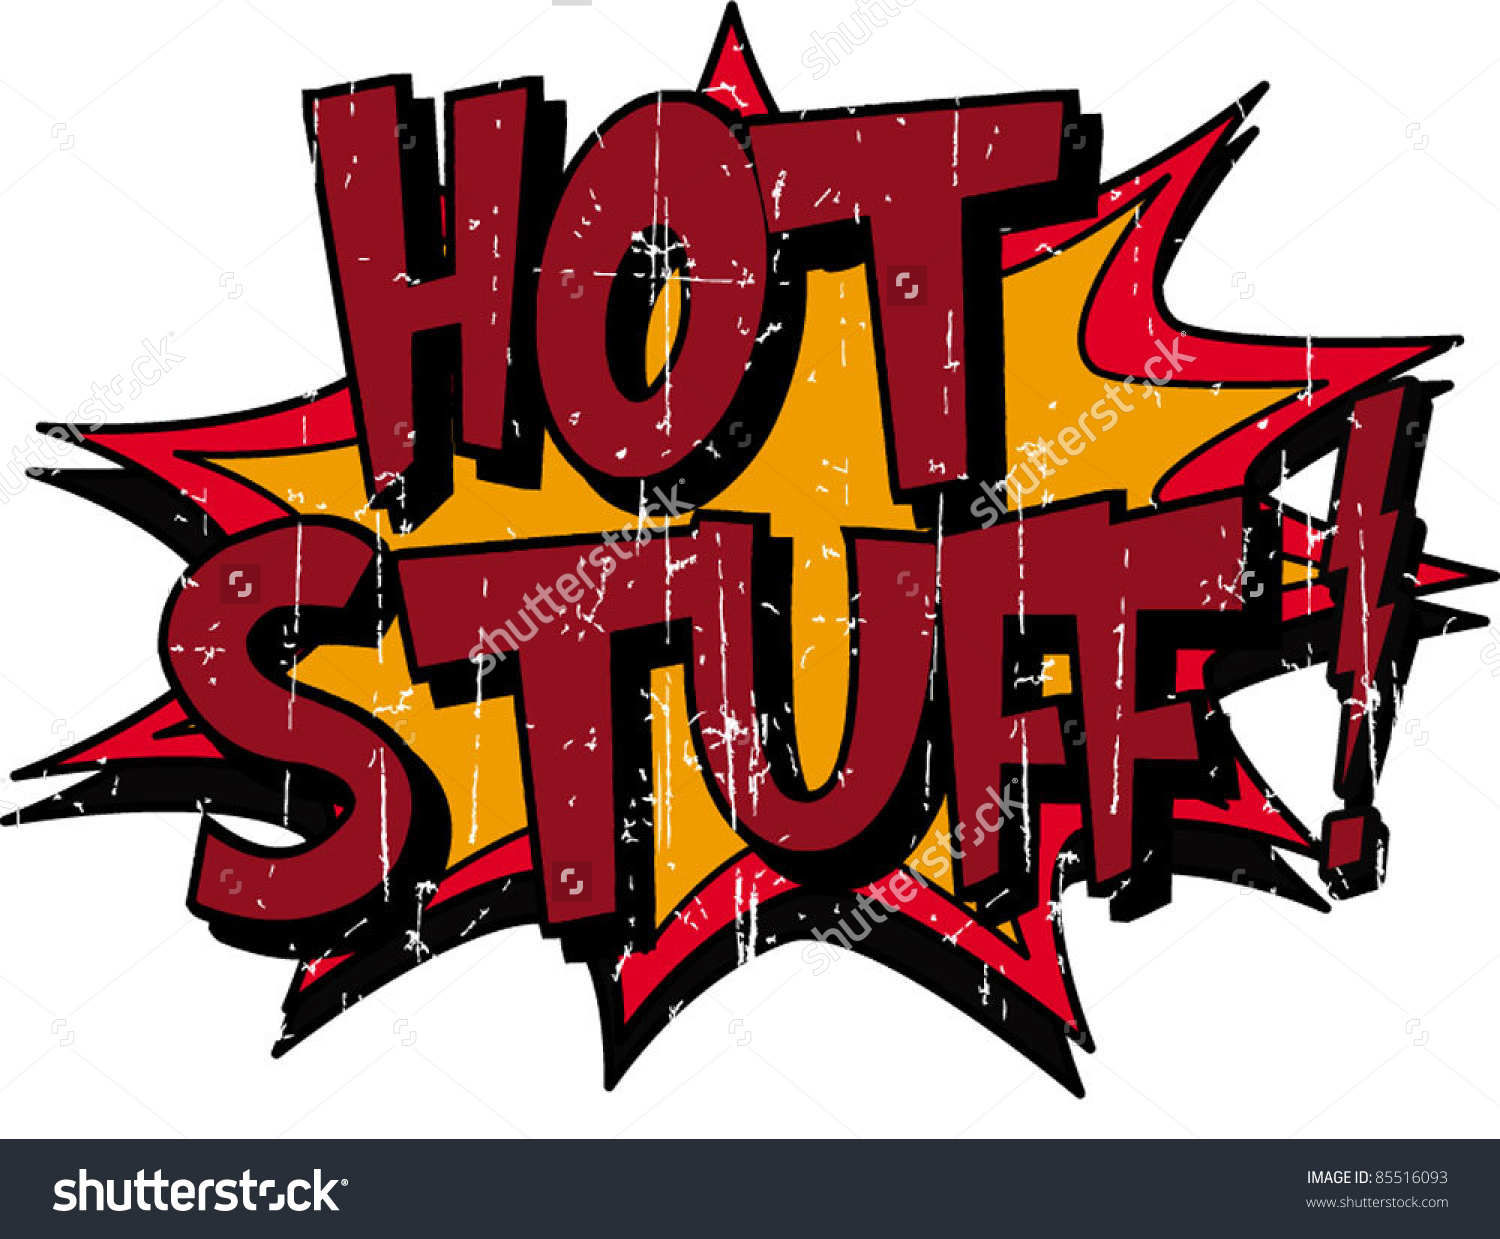 Hot Stuff HD wallpapers, Desktop wallpaper - most viewed